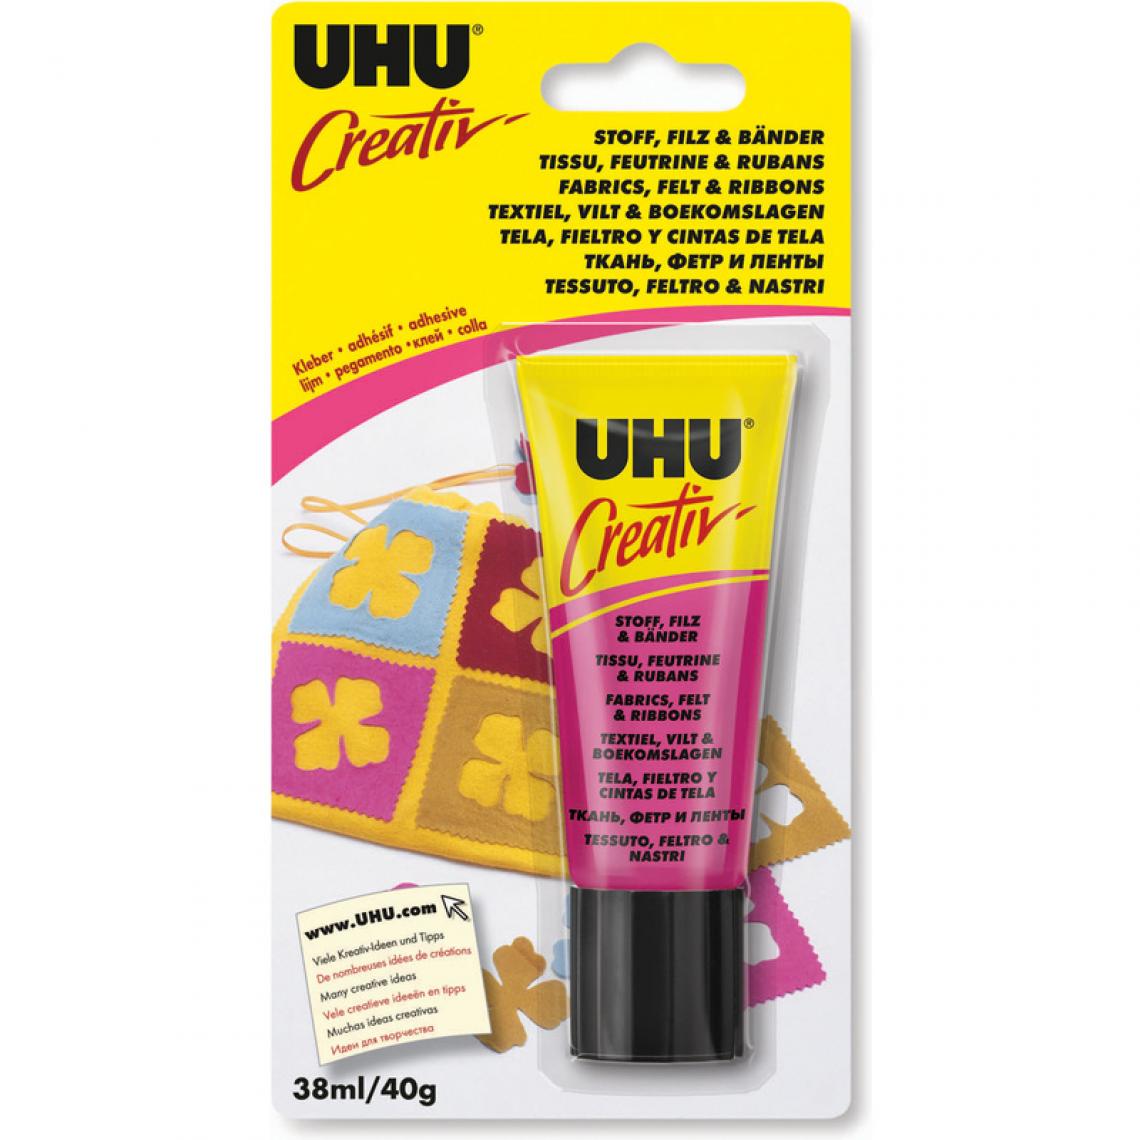 Uhu - UHU Colle spéciale 'Creativ' pour tissus, feutrine & rubans () - Colles et pistolets à colle